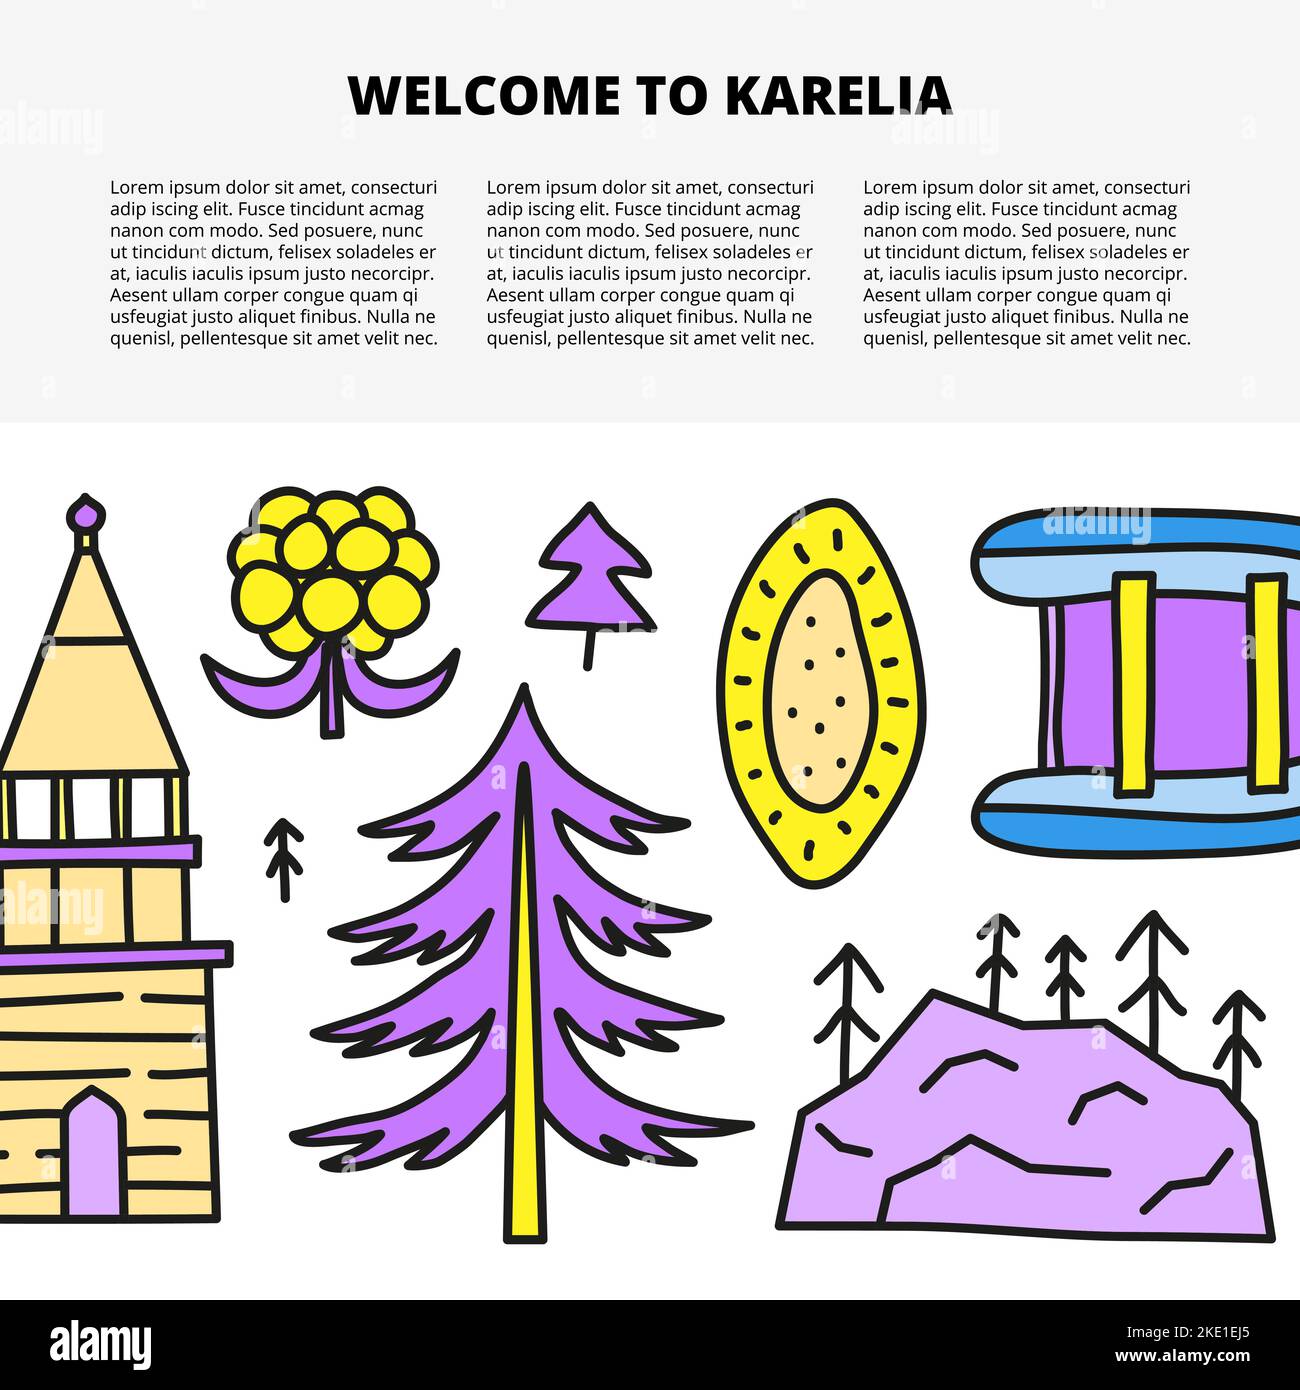 Modello di articolo con spazio per il testo e doodle colorate Karelia icone tra cui mirtillo rosso, fiume, colline, pesci trota, orso isolato su sfondo bianco Illustrazione Vettoriale